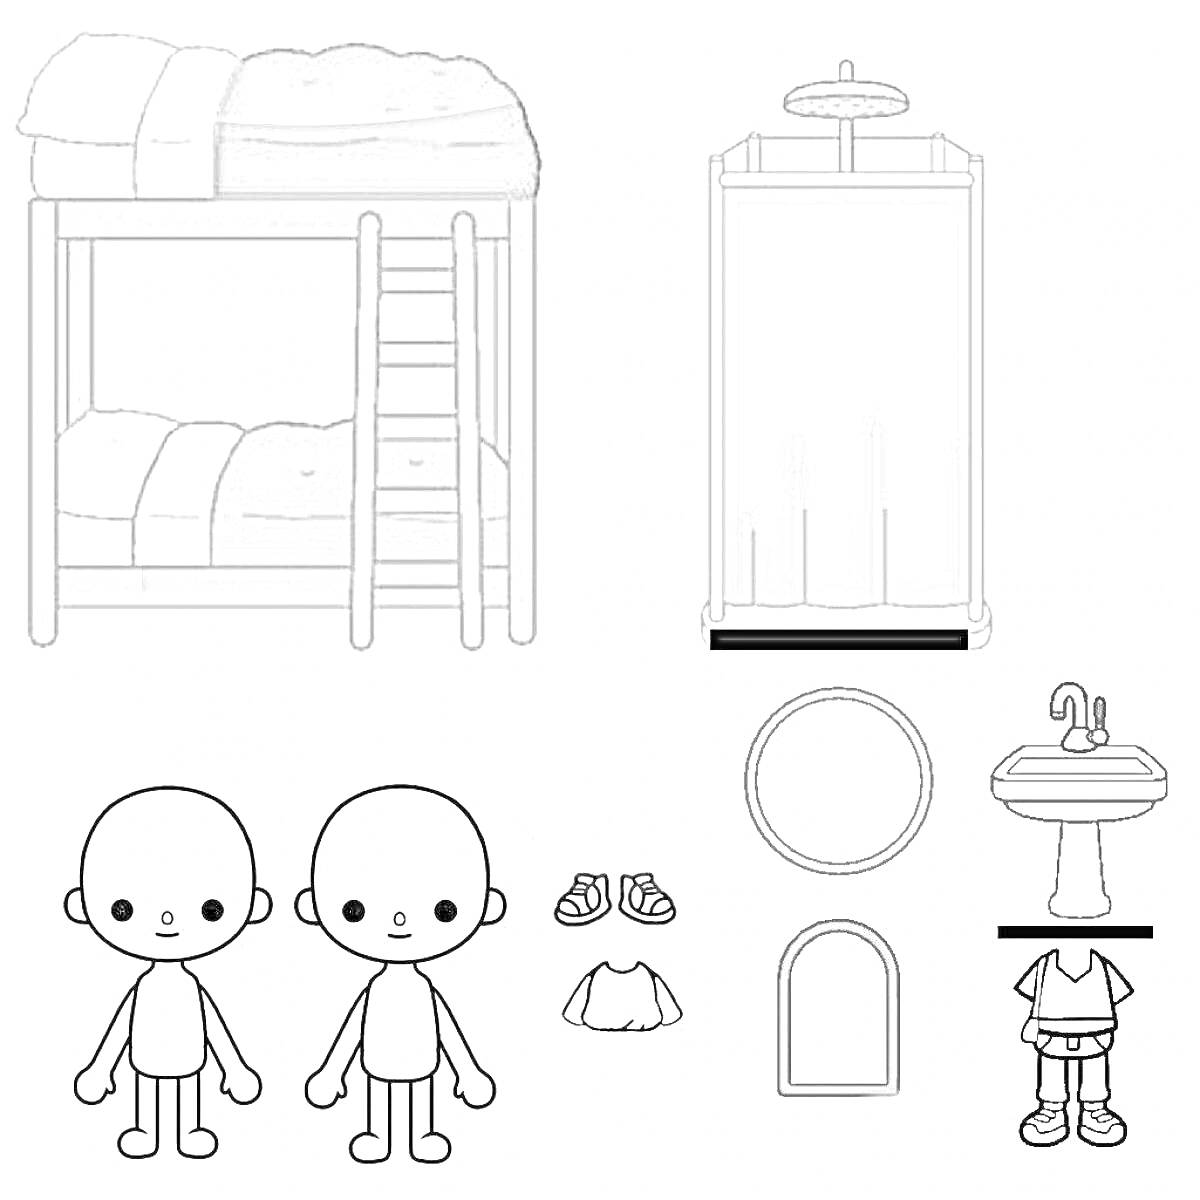 Двухъярусная кровать, душ, раковина, зеркало круглое, зеркало прямоугольное, два персонажа без волос, обувь, белая рубашка с ремешком, белая рубашка